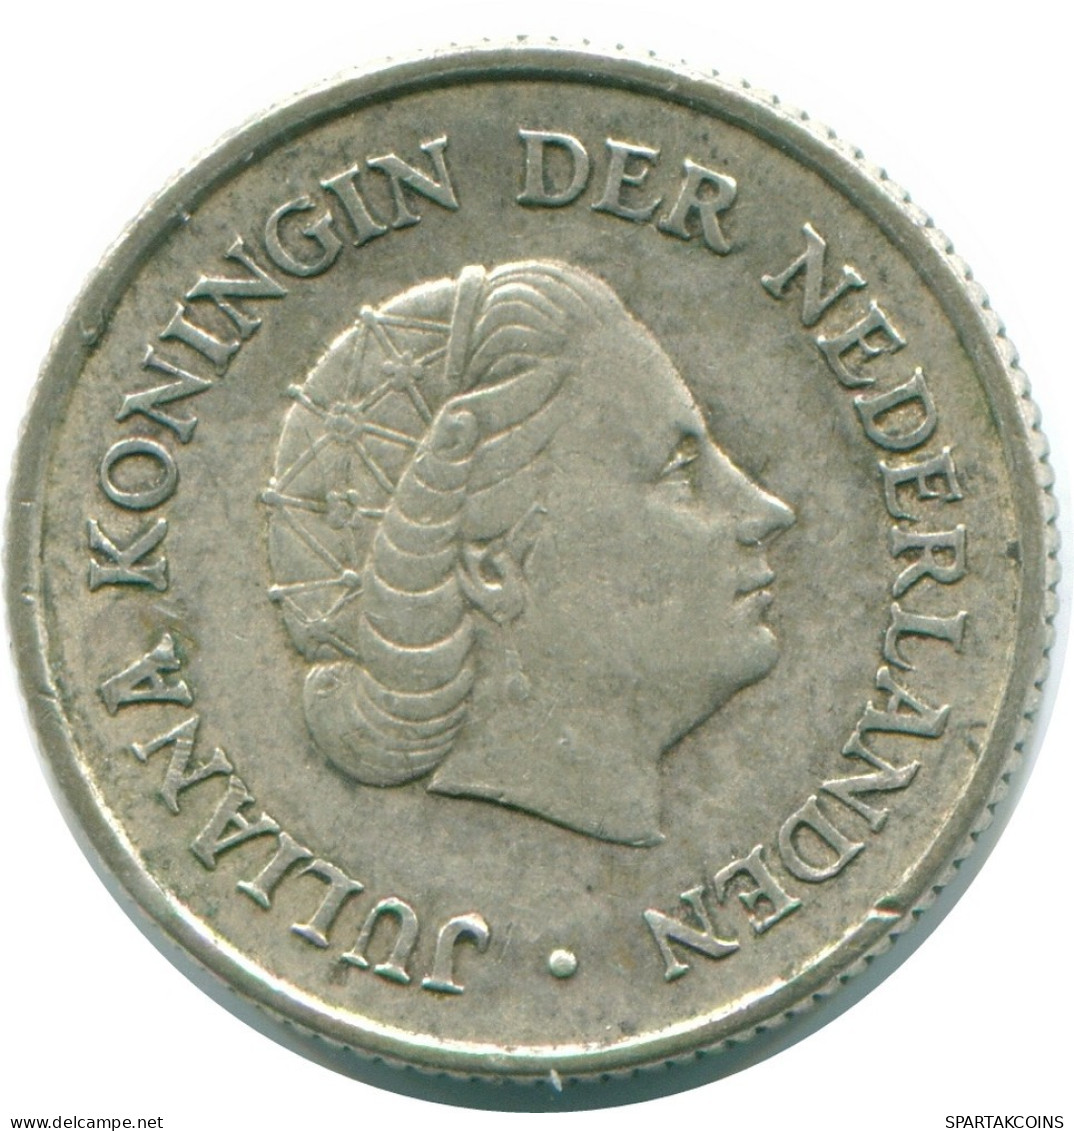 1/4 GULDEN 1965 NIEDERLÄNDISCHE ANTILLEN SILBER Koloniale Münze #NL11326.4.D.A - Niederländische Antillen